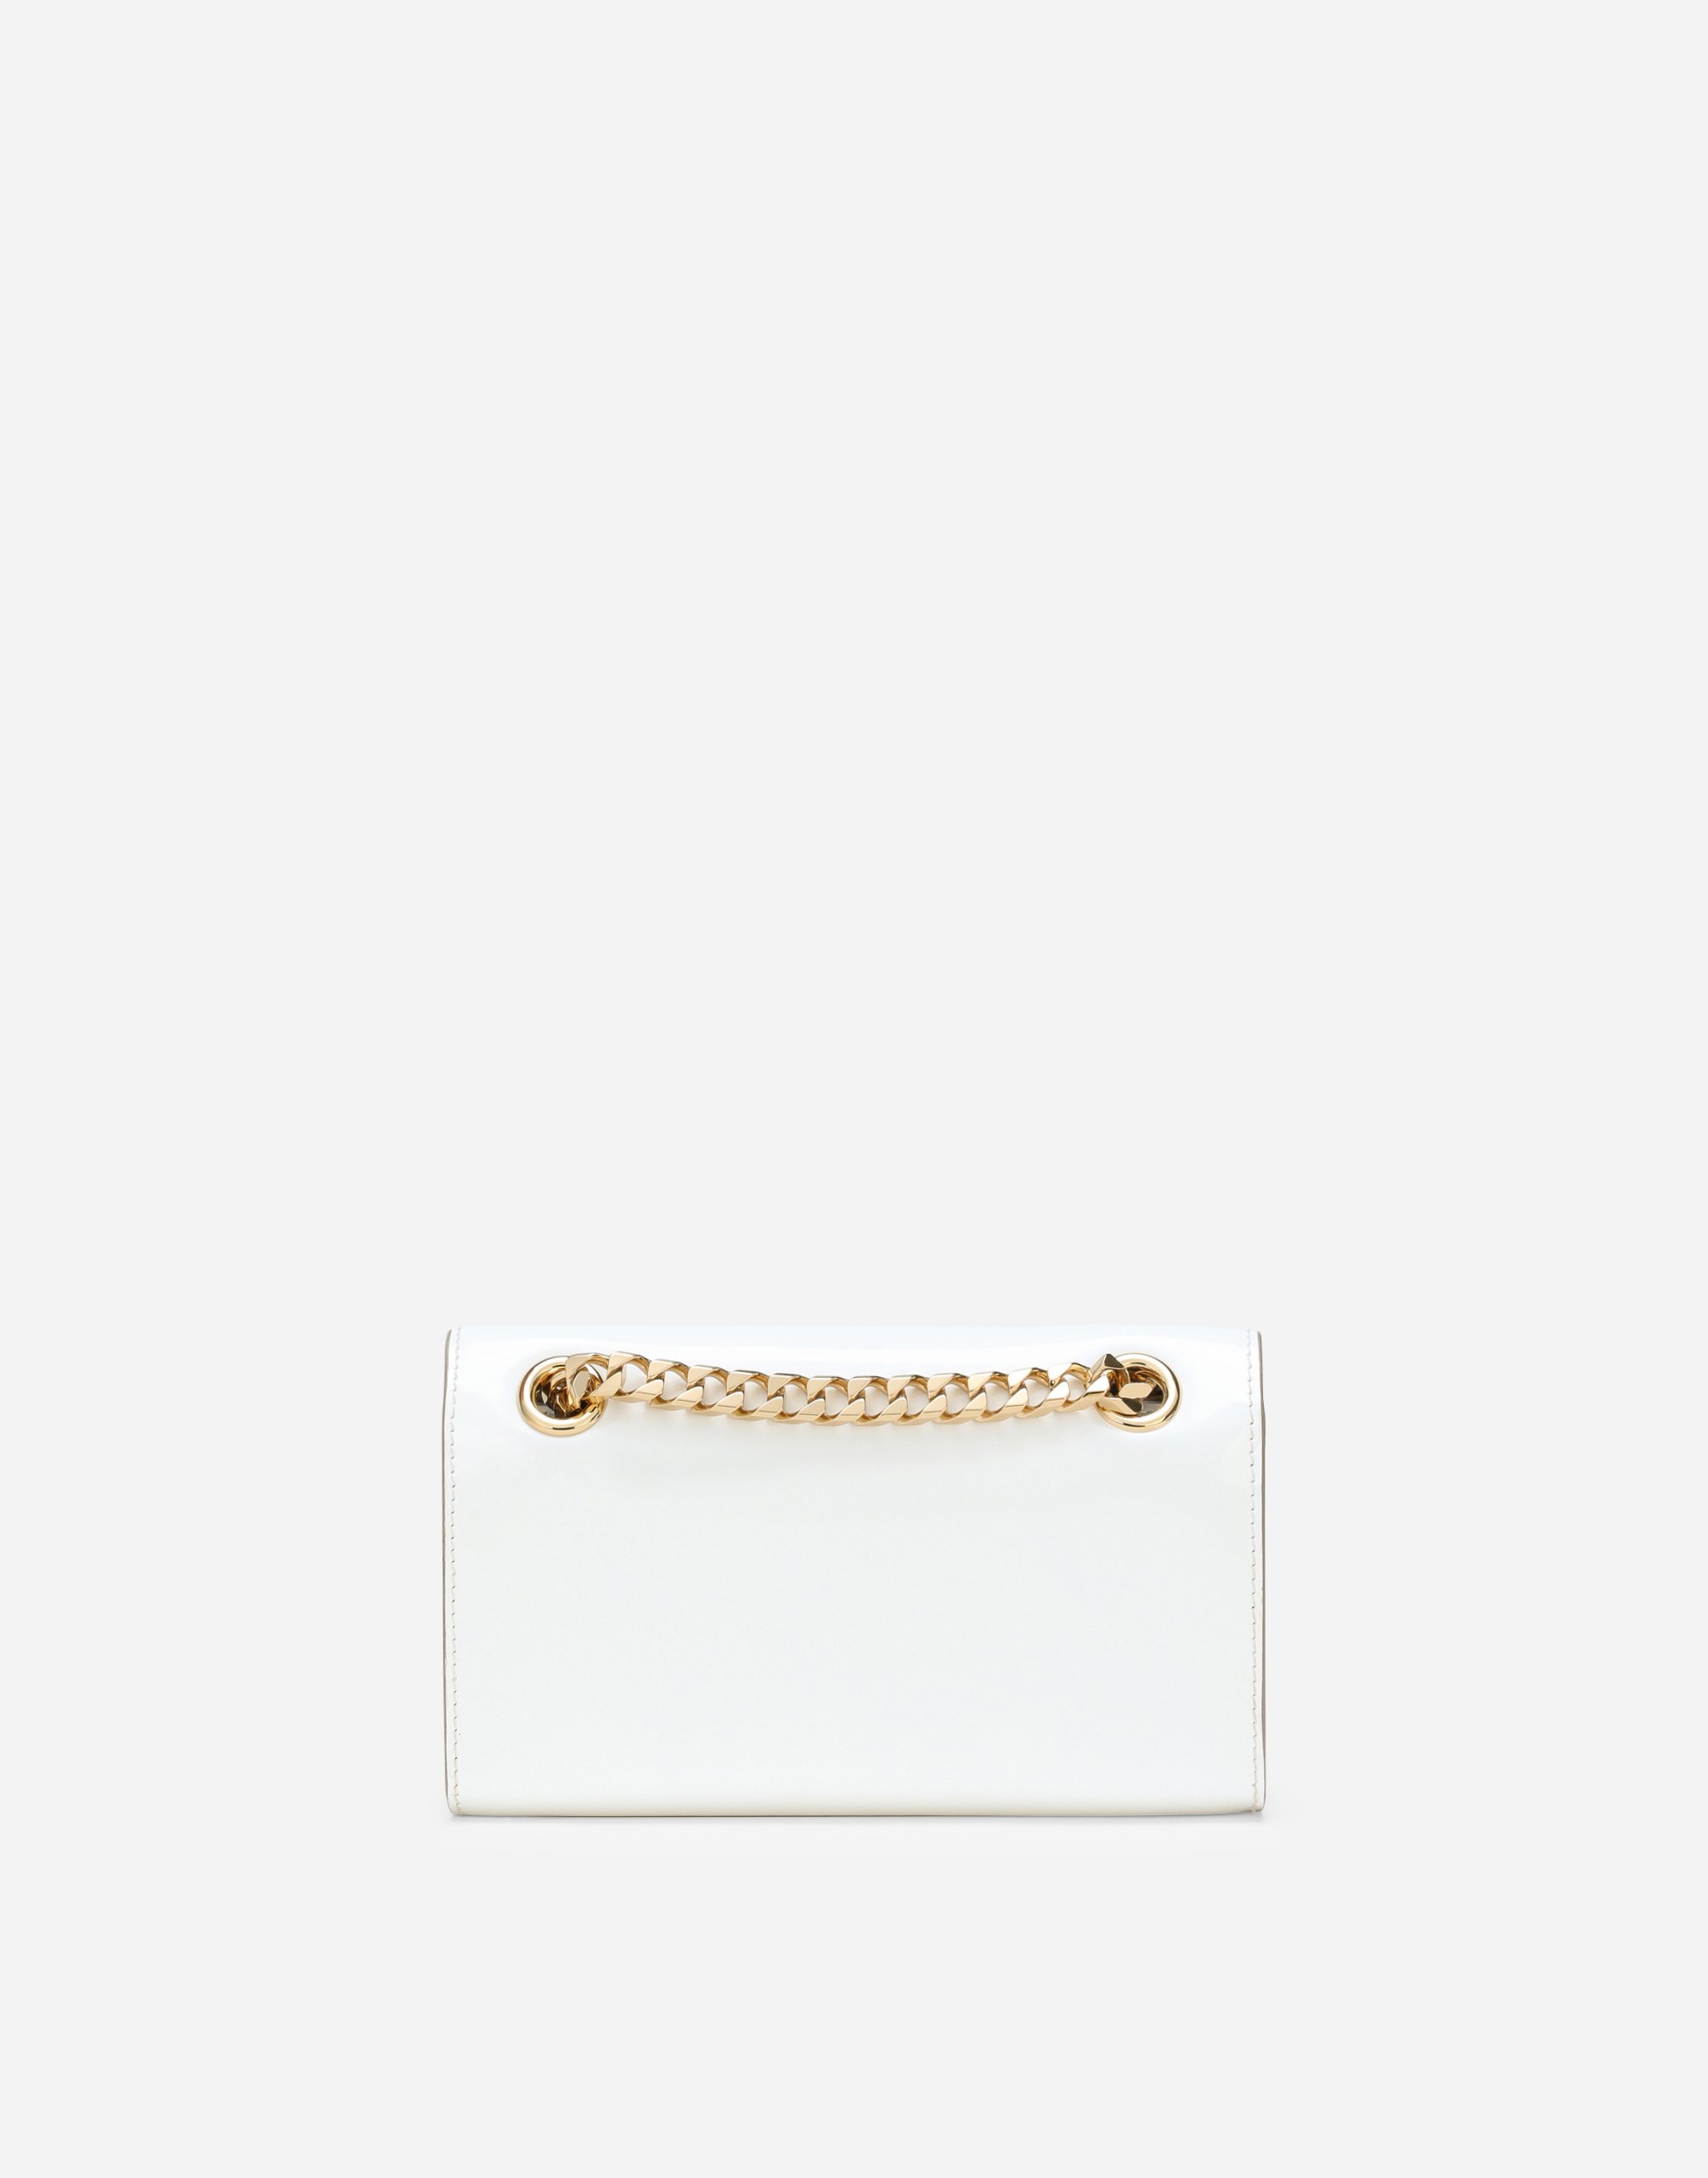 Shop Dolce & Gabbana Polished Calfskin 3.5 Phone Bag In White